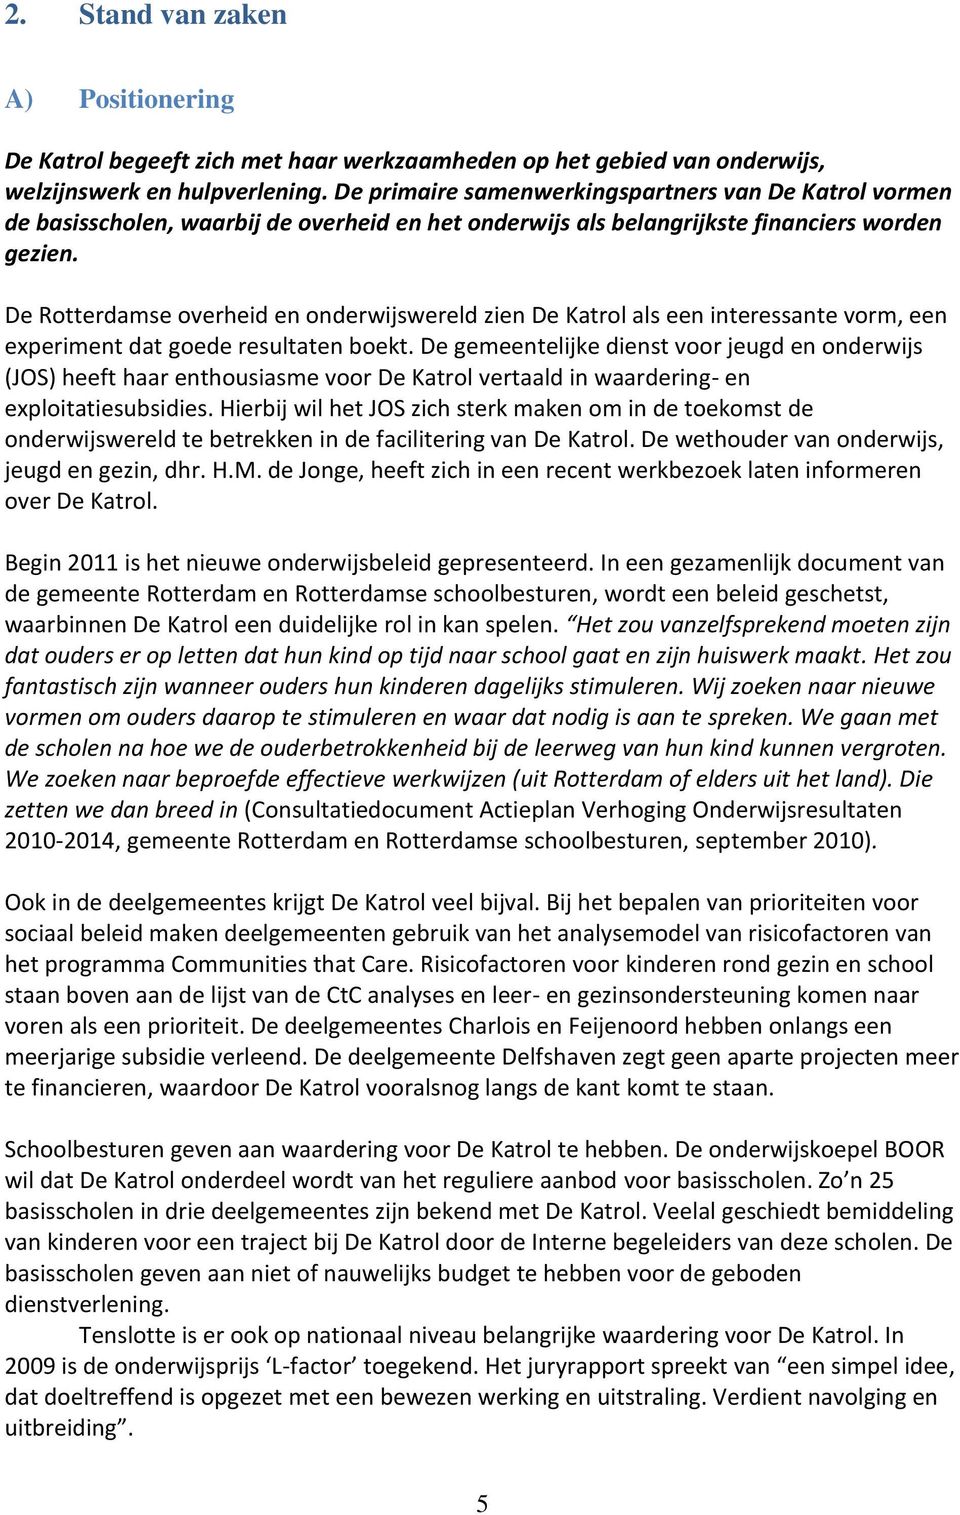 De Rotterdamse overheid en onderwijswereld zien De Katrol als een interessante vorm, een experiment dat goede resultaten boekt.